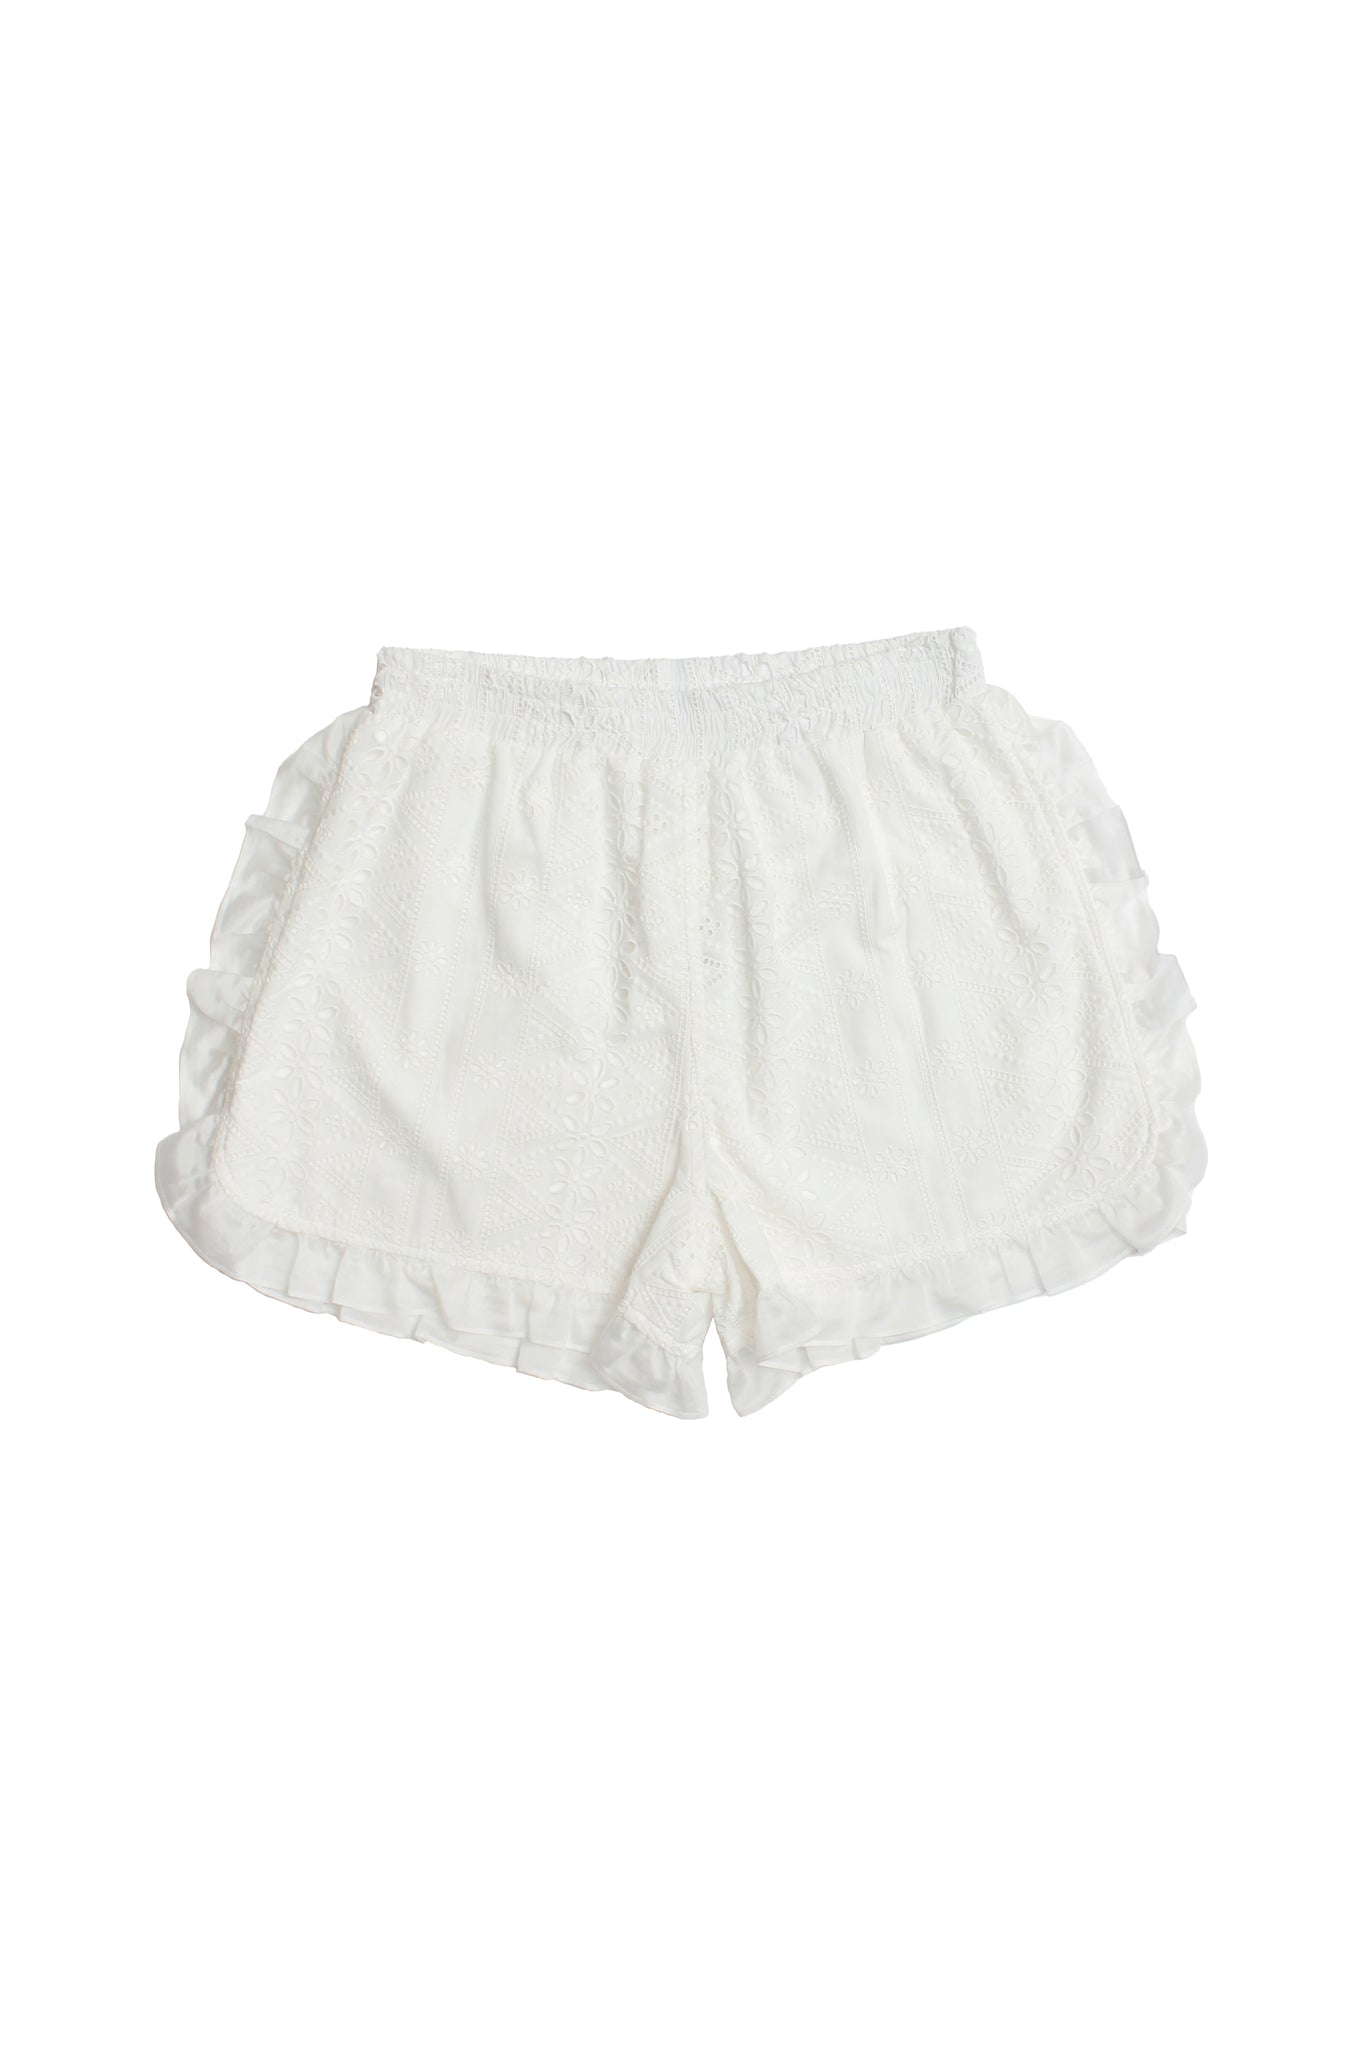 April Lace Shorts